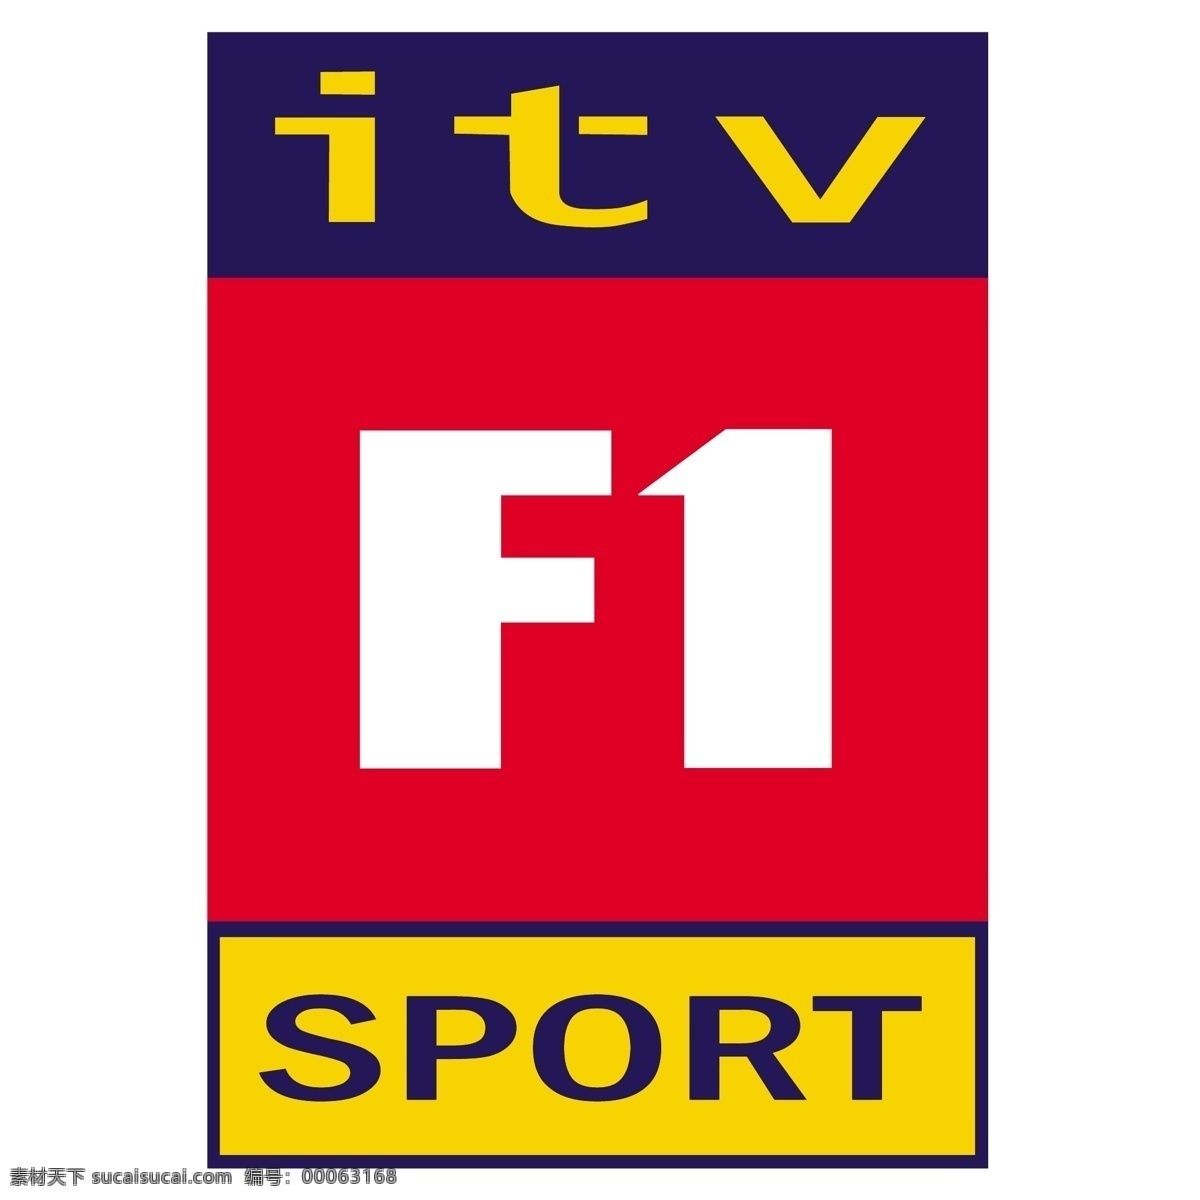 itv 体育 f1 免费 标识 psd源文件 logo设计